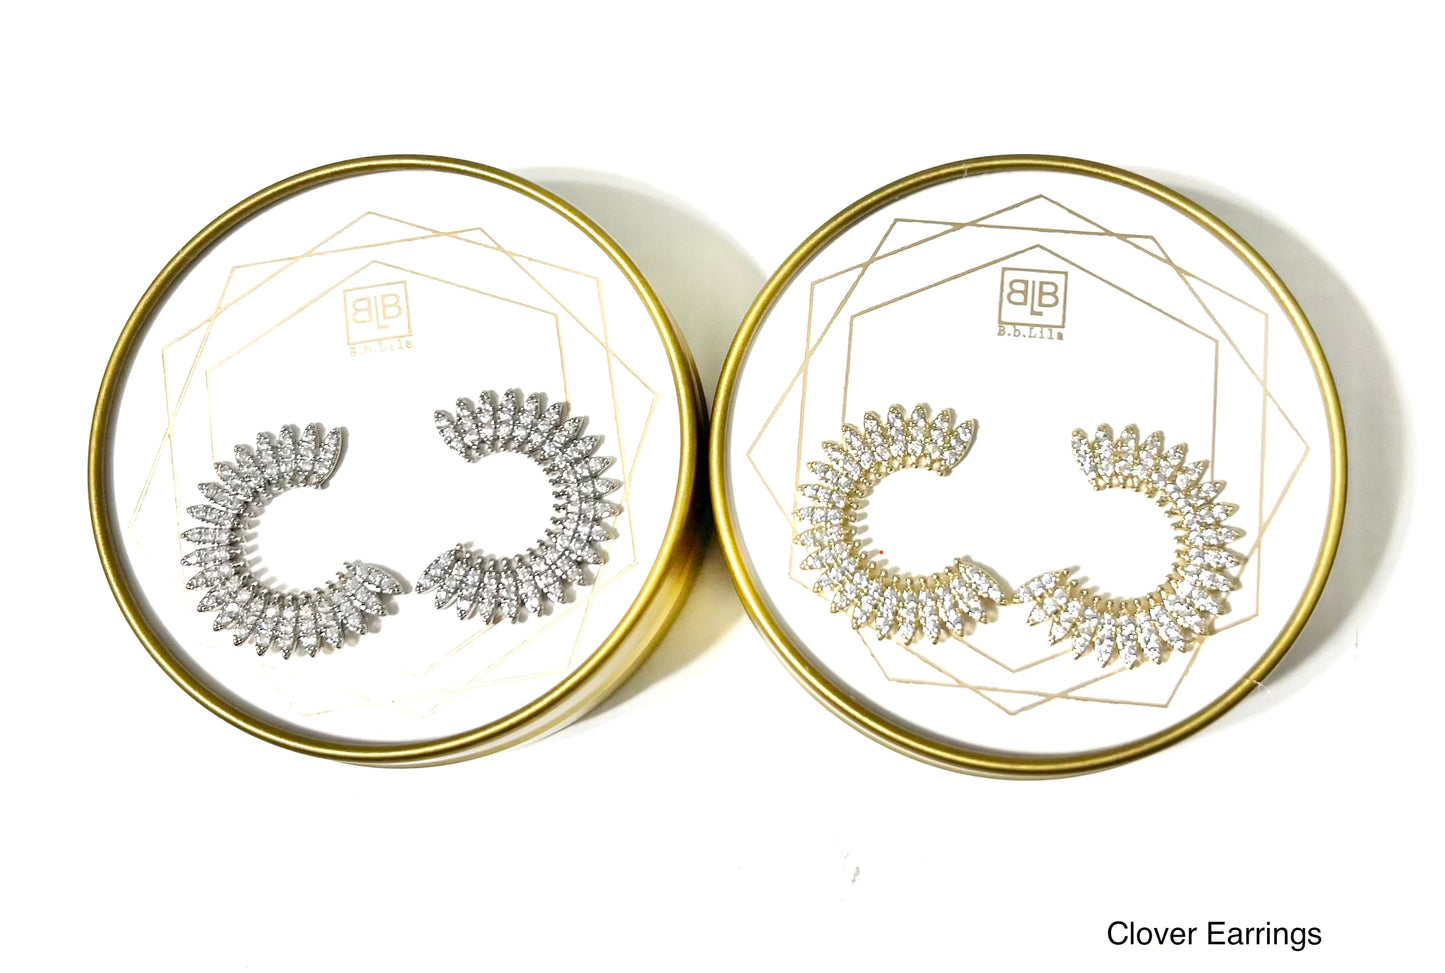 Clover Earrings - Gold